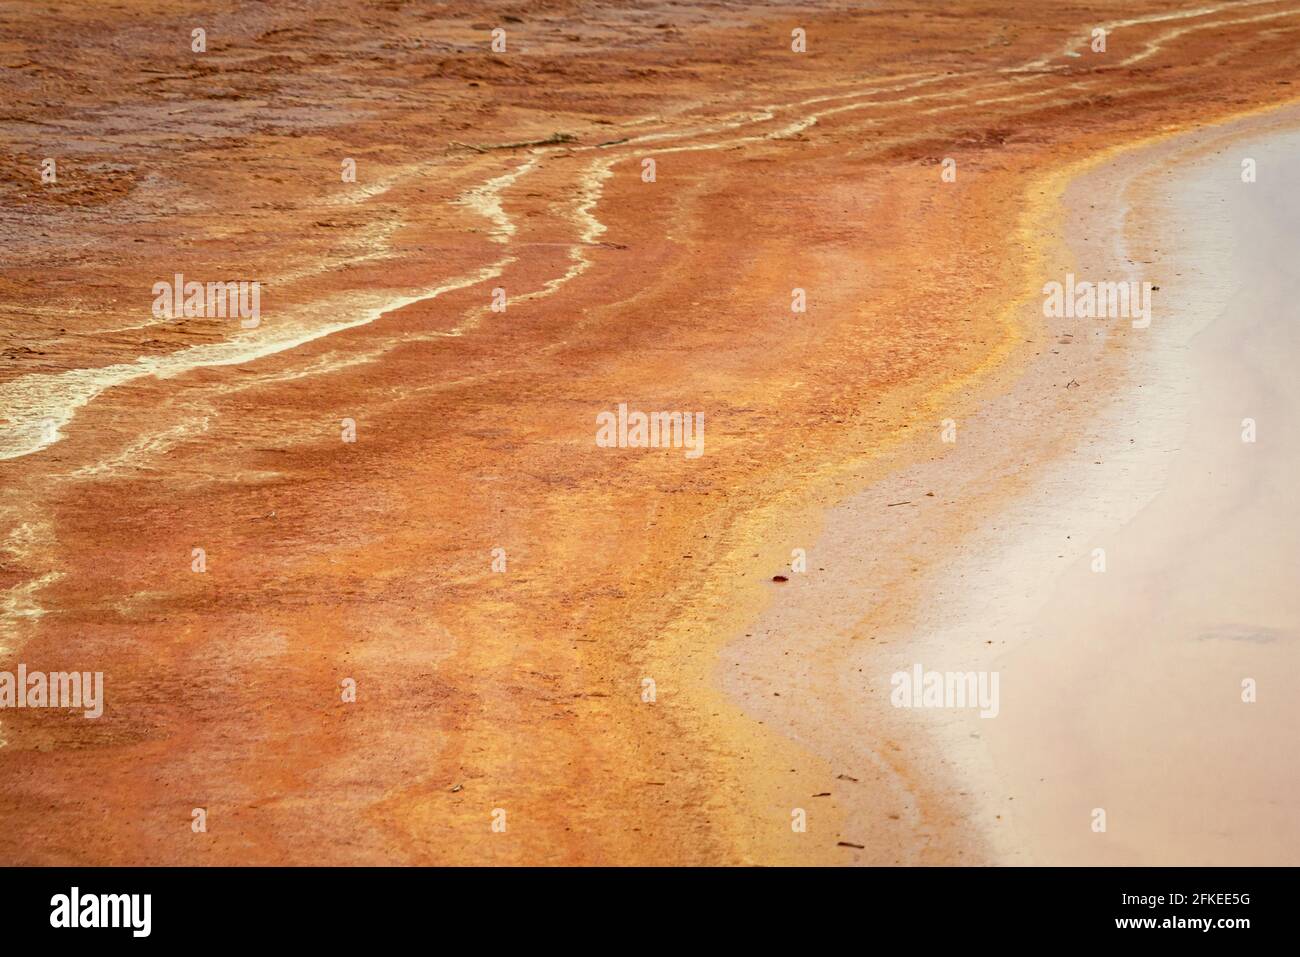 Déchets miniers avec drainage acide dans les mines abandonnées de Mazarrón. Région de Murcie. Espagne Banque D'Images